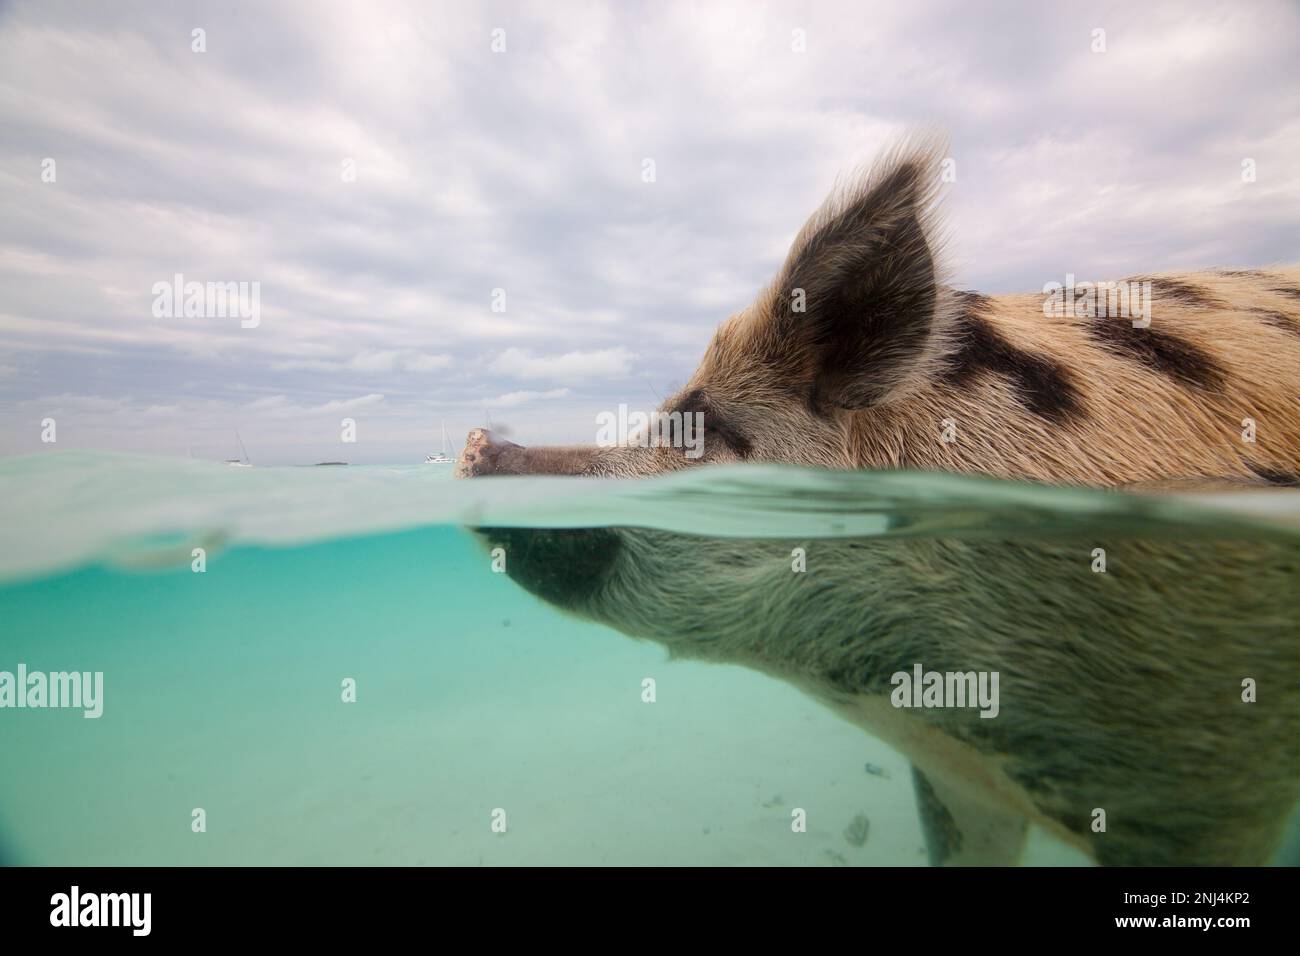 swimming pigs, Exuma, Bahamas Stock Photo